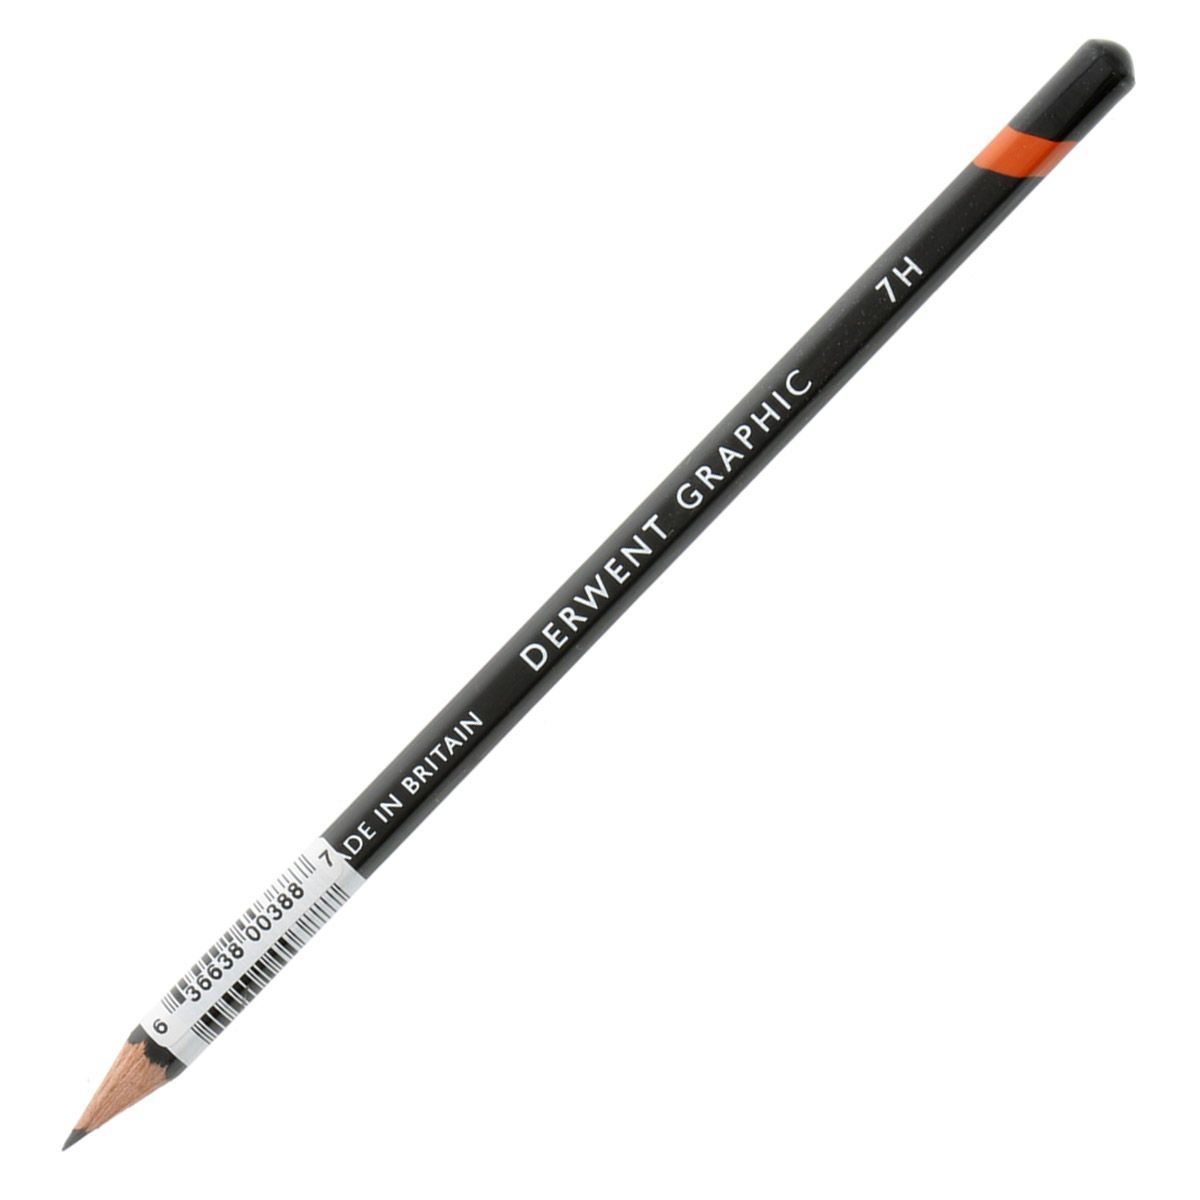 Derwent Graphic Pencil - 7H